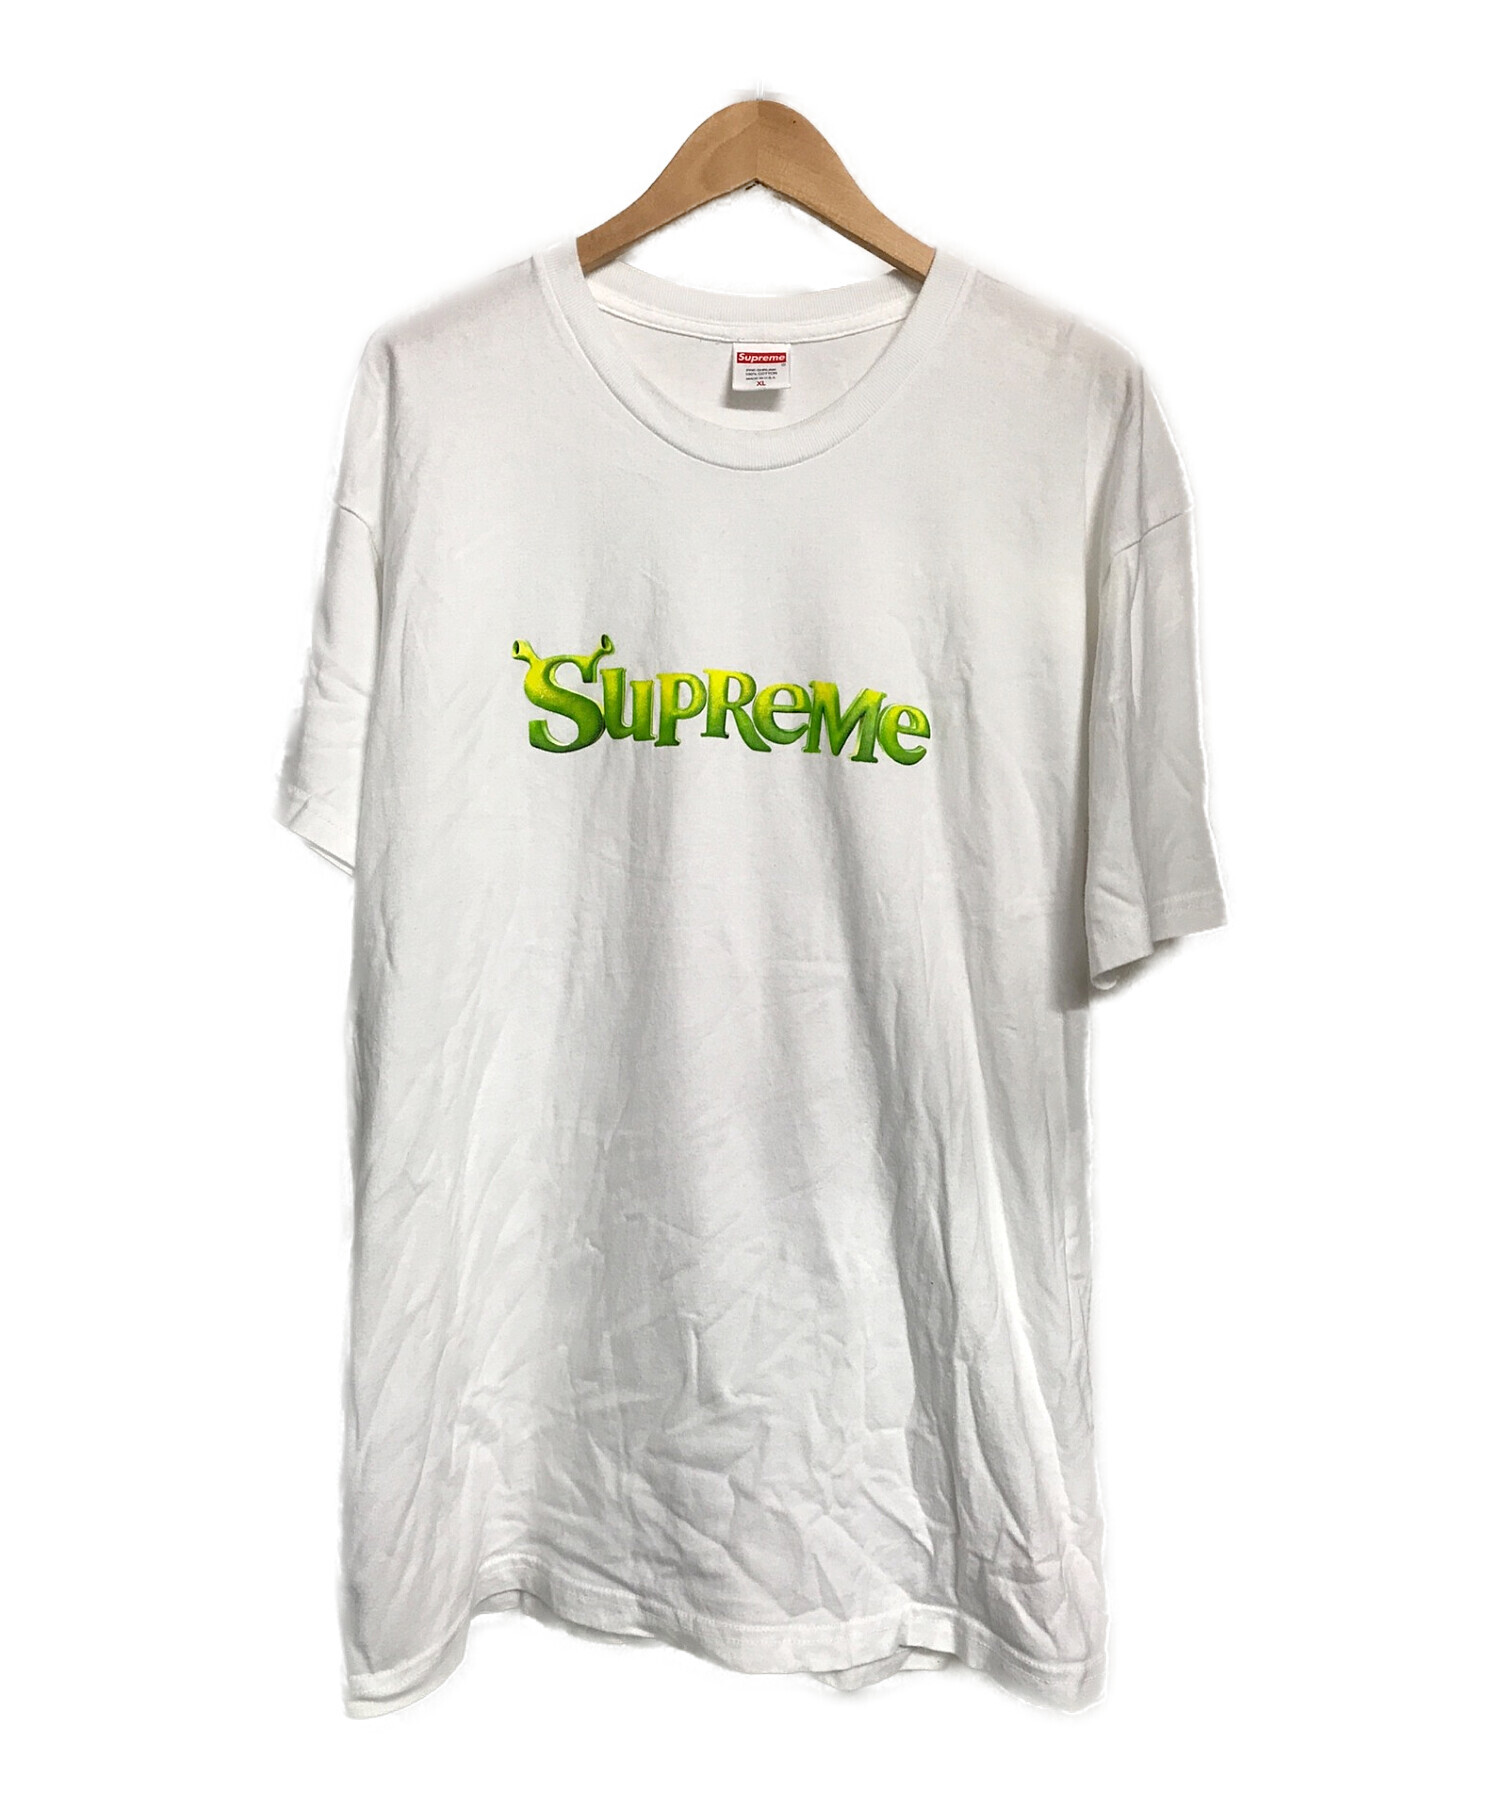 ブランド Supreme - Supreme shrek Tee シュレックの通販 by karimelos